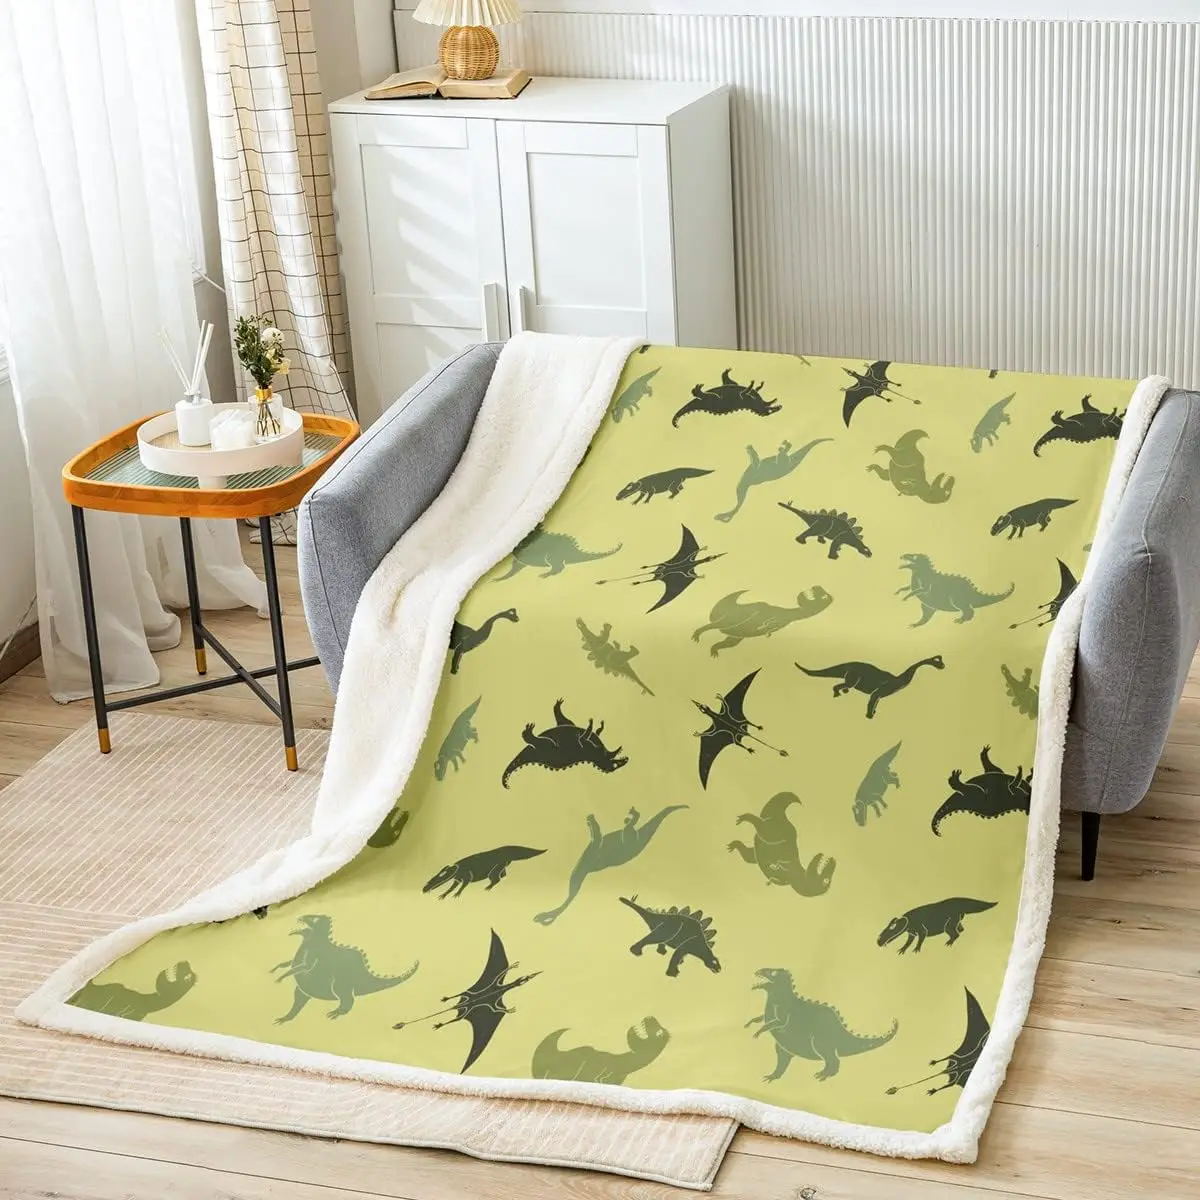 Camo Dinosaur Throw Blanket Армейское зеленое камуфляжное одеяло для кровати для детей, мальчиков, подростков, декор комнаты, дикие животные, флисовое одеяло - 0